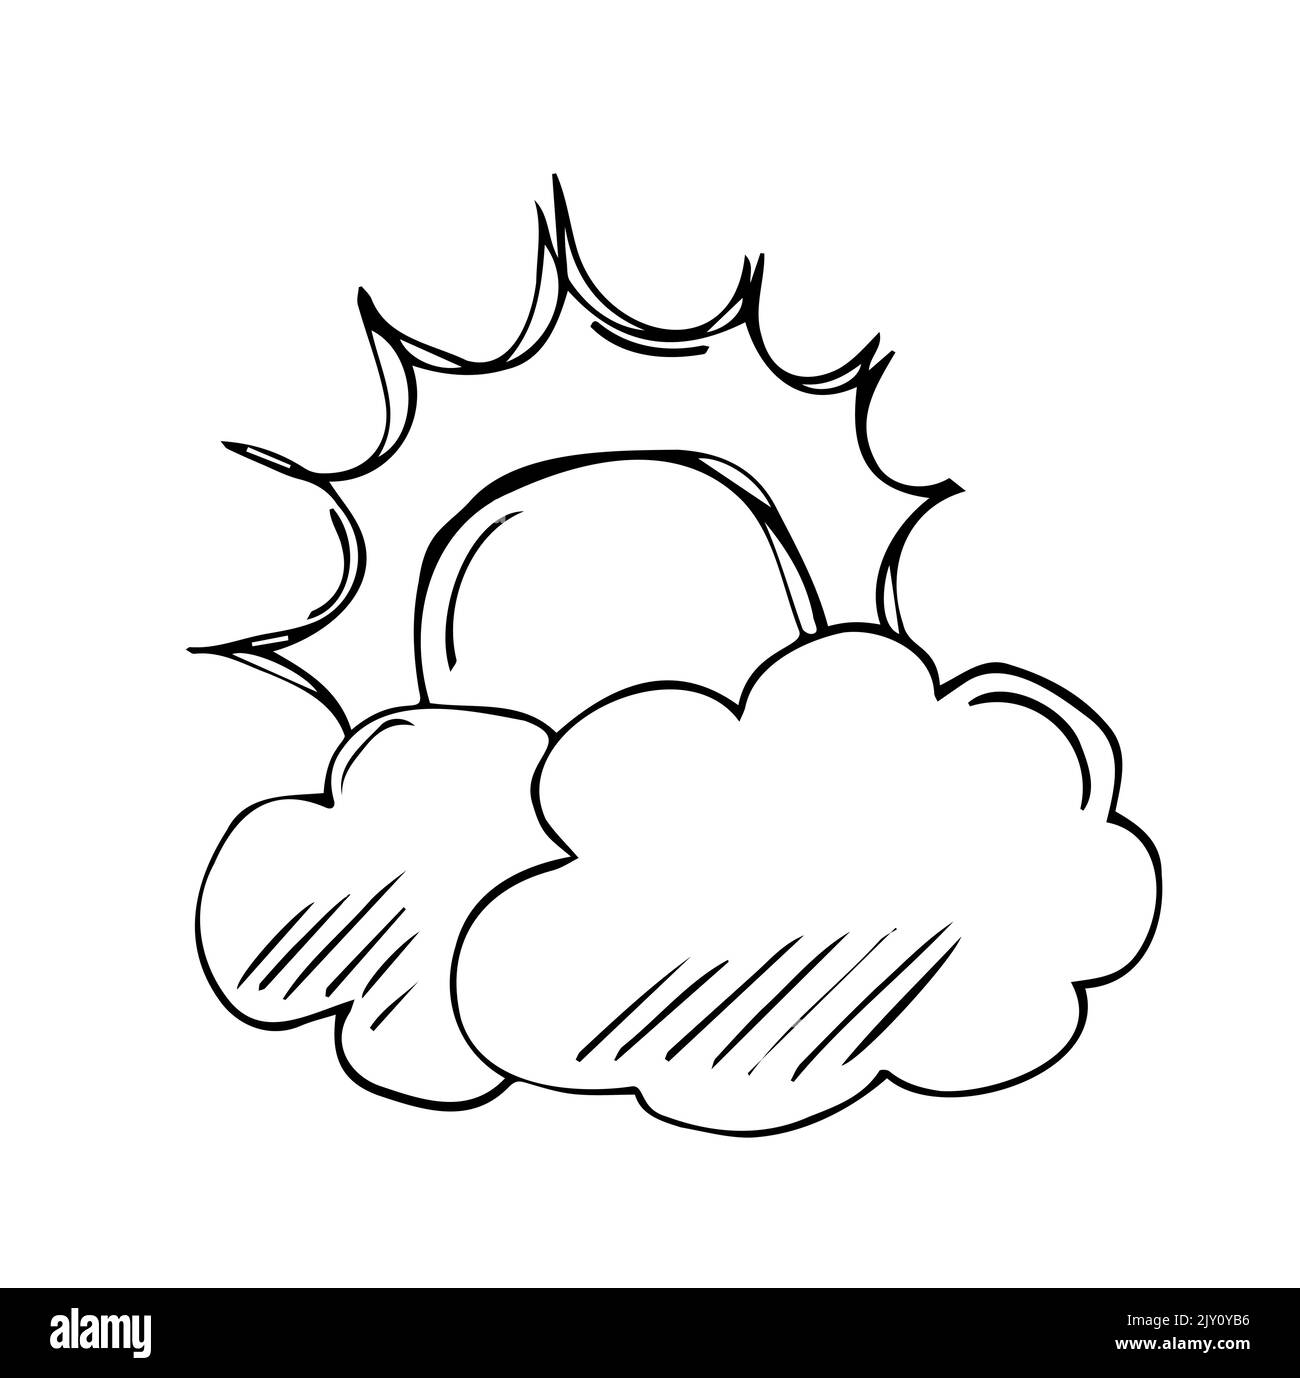 Wetterverhältnisse. wolkiges Wetter. himmel und Sonne, Wolken. Handgezeichnete Vektorgrafik im Skizzenstil. Stock Vektor